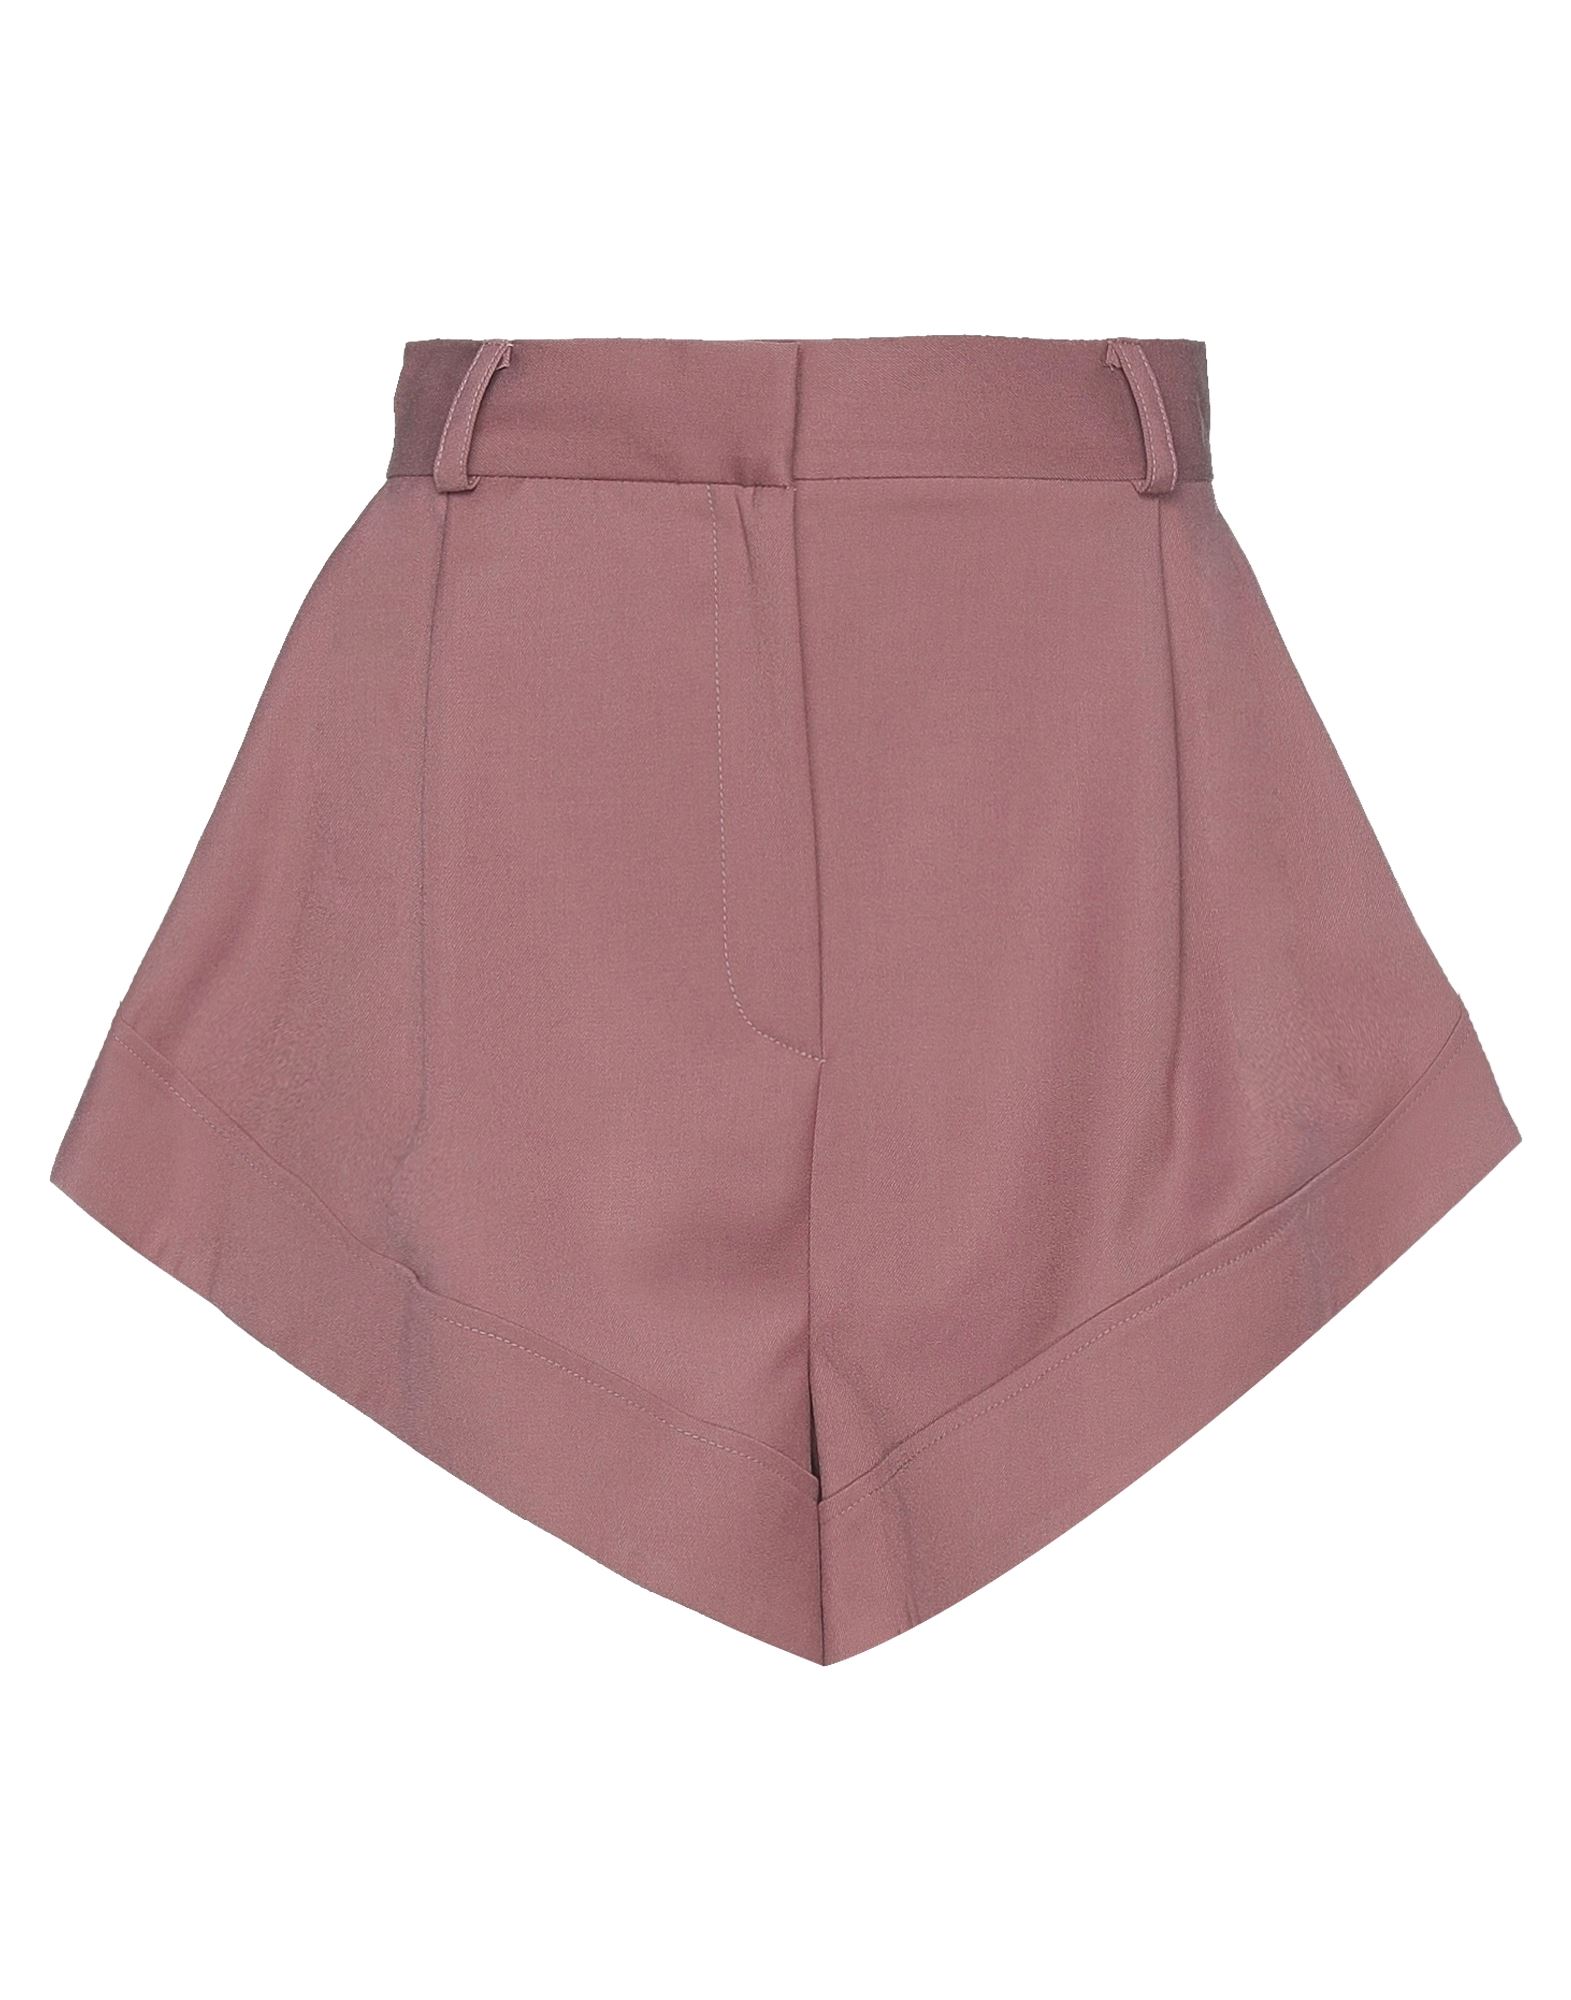 Actualee Woman Shorts & Bermuda Shorts Pastel Pink Size 8 Polyester, Rayon, Elastane